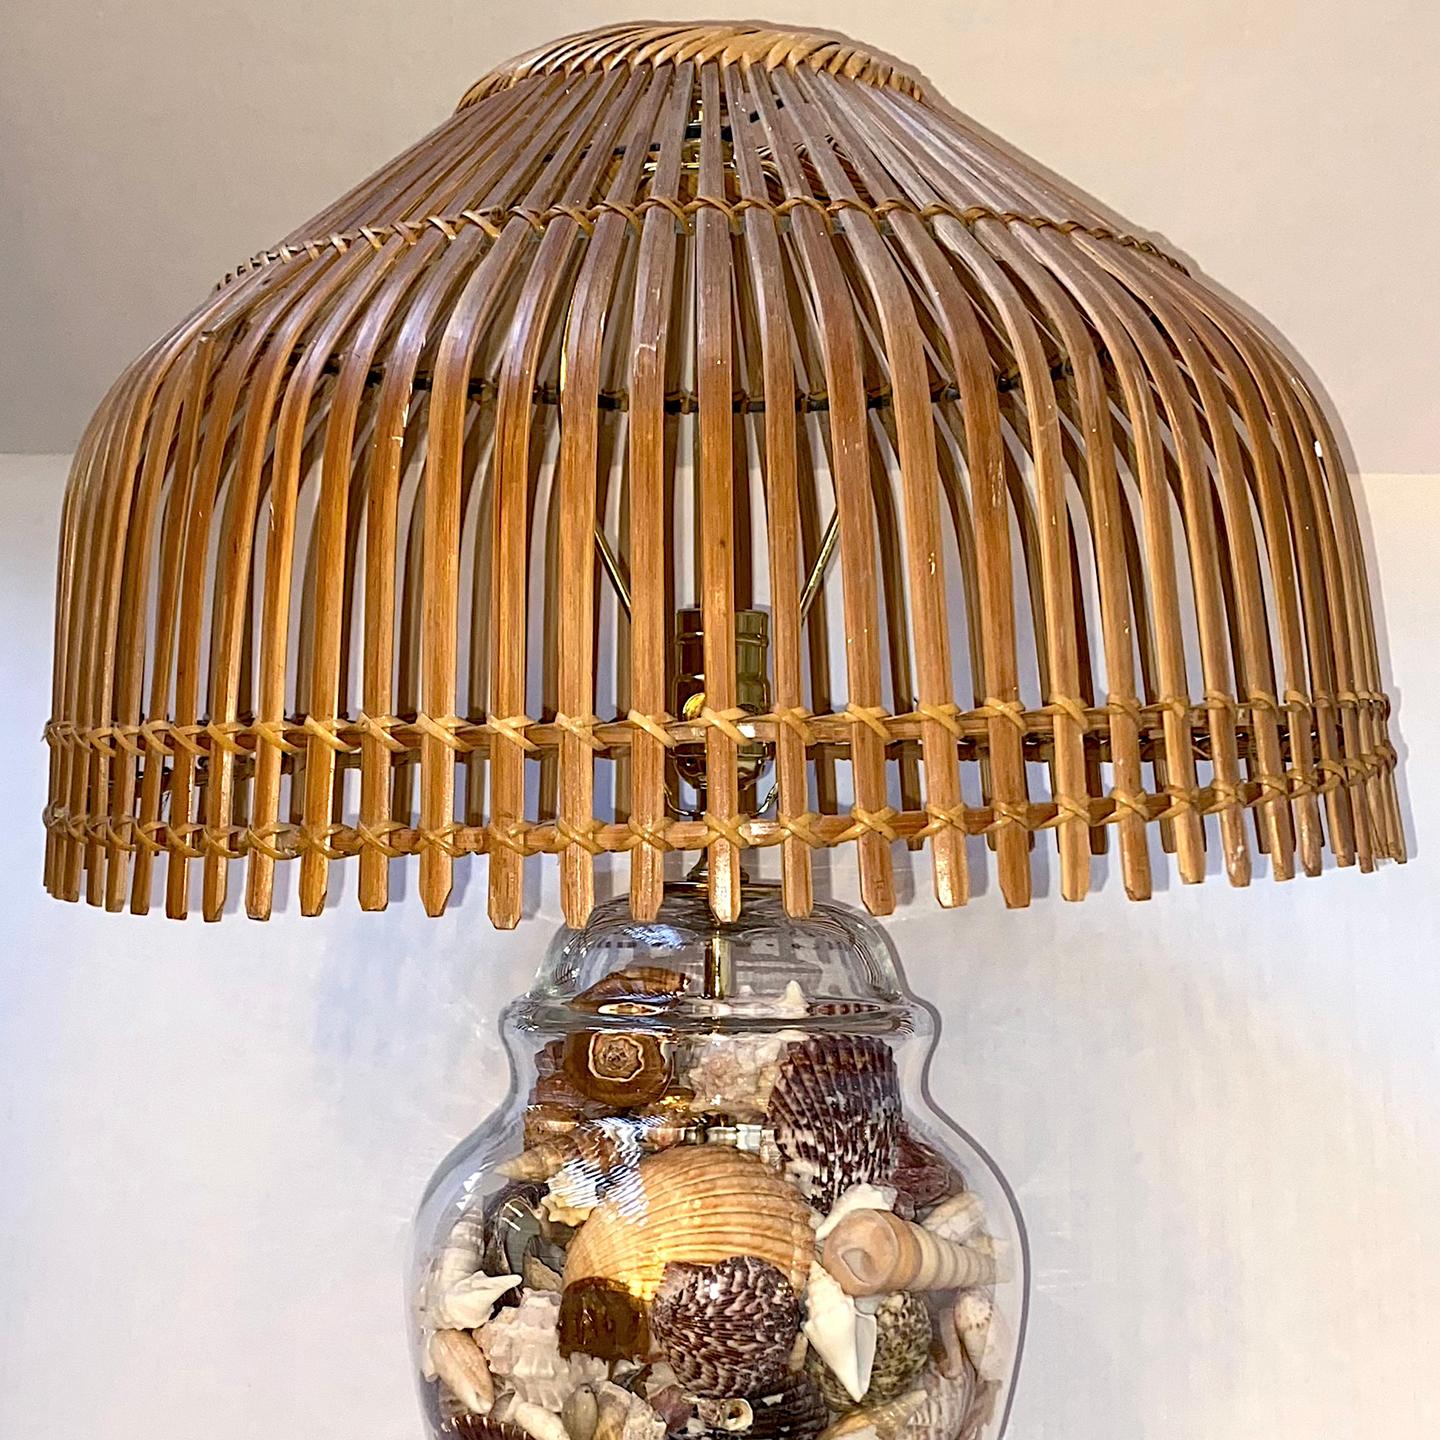 Lampe américaine en verre avec coquillages et abat-jour en bambou, datant des années 1960.

Mesures :
Diamètre de l'abat-jour : 18.5